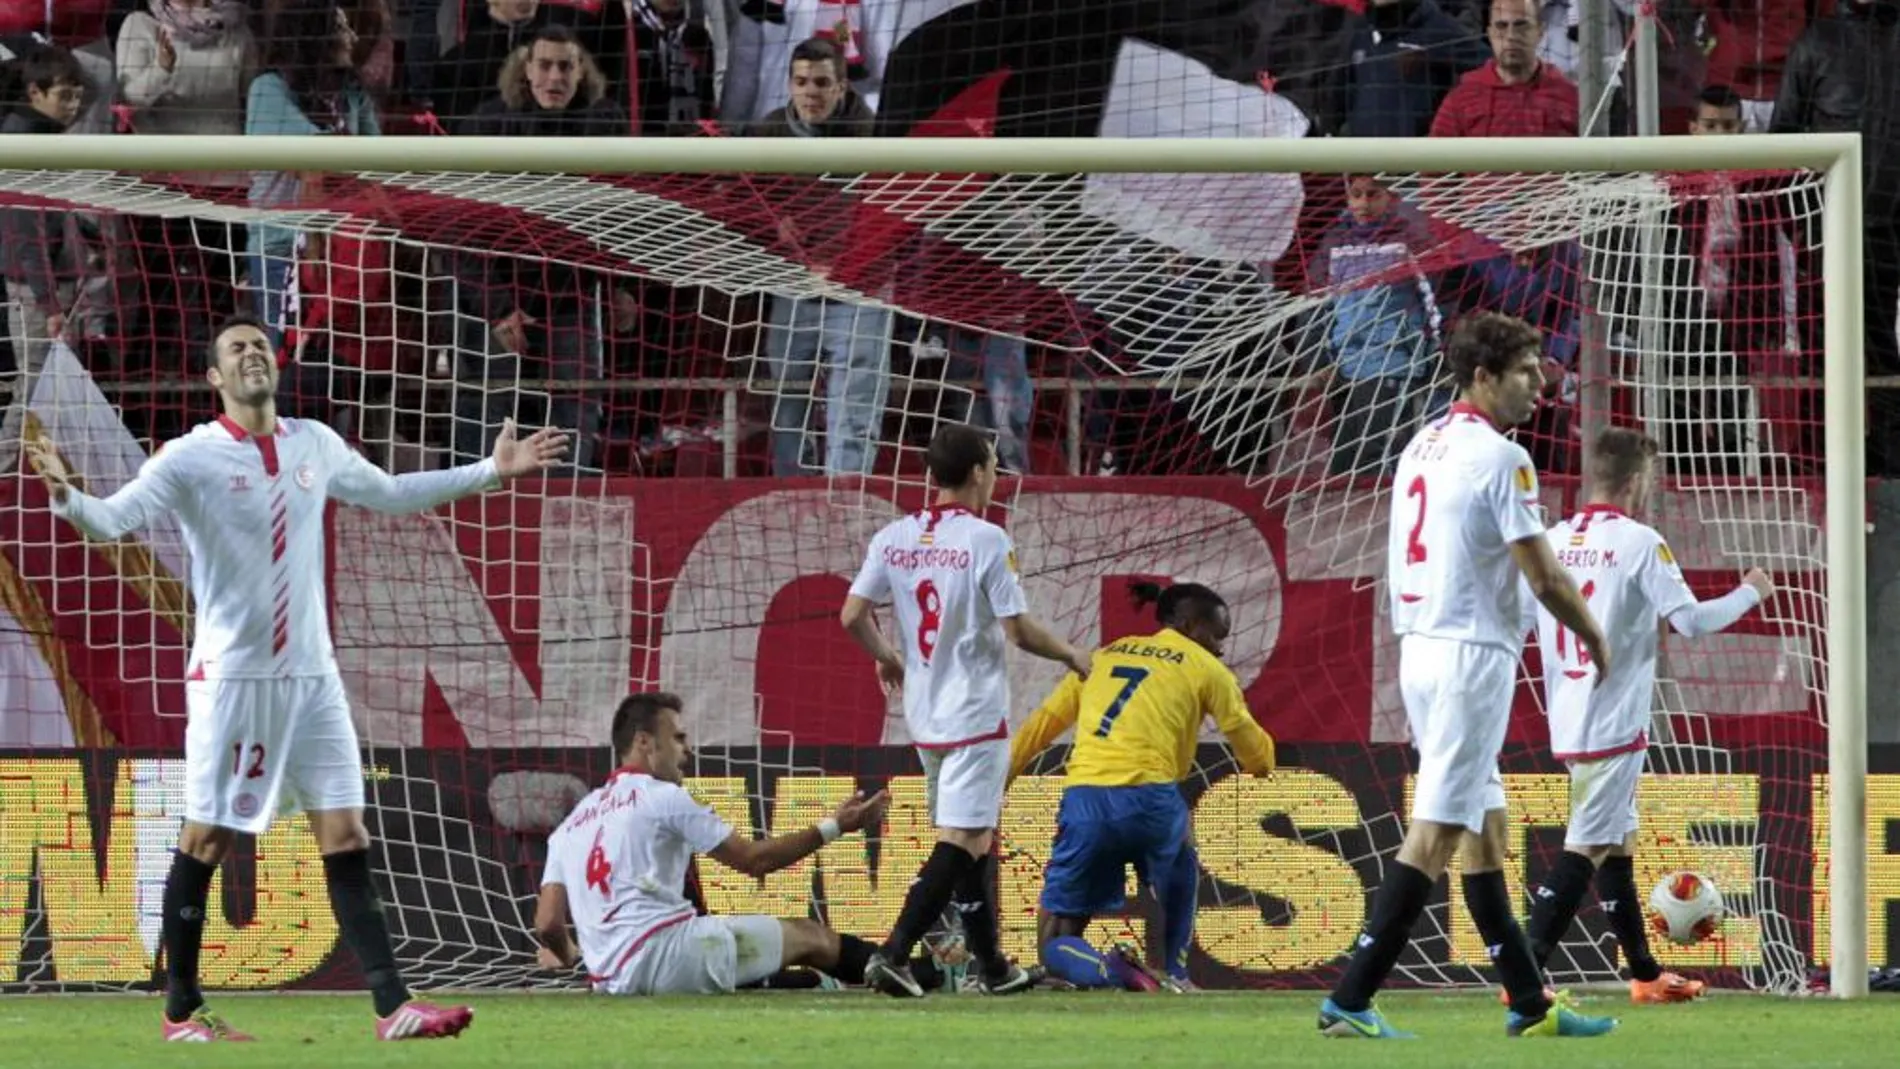 Los jugadores del Sevilla se lamentan tras el gol del jugador del GD Estoril Rubén Fernades, en los últimos minutos del encuentro, que supuso el empate a uno en el partido correspondiente a la quinta jornada del grupo H de la Liga Europa disputado esta noche en el estadio Ramón Sánchez Pizjuán.